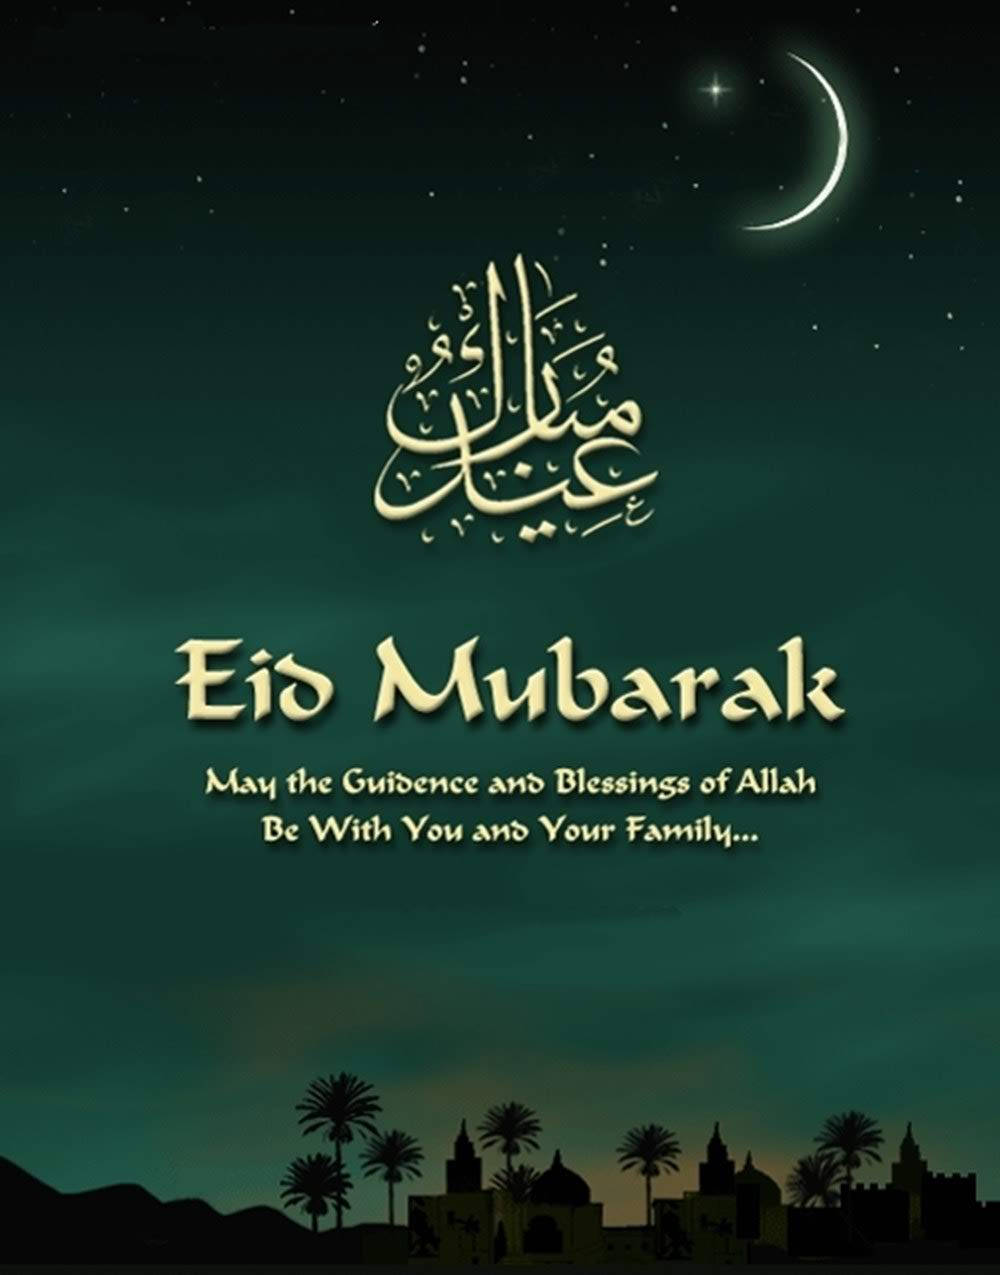 Celebration Of Faith - Eid Mubarak Background